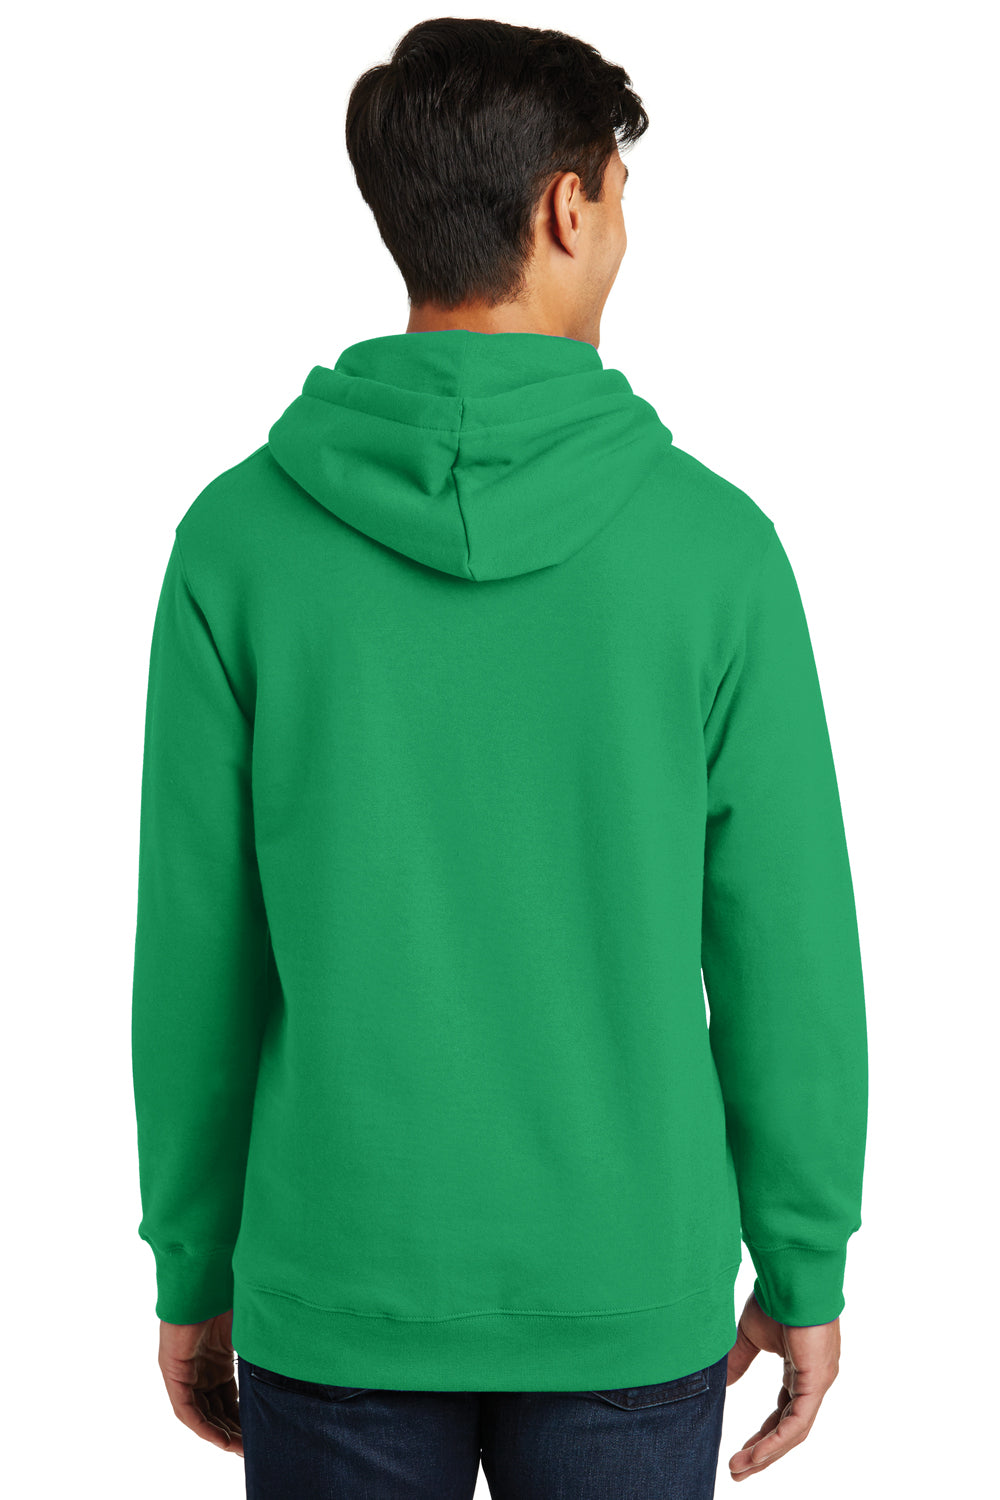 Port & Company PC850H Mens Fan Favorite Fleece Hooded Sweatshirt Hoodie Kelly Green Back